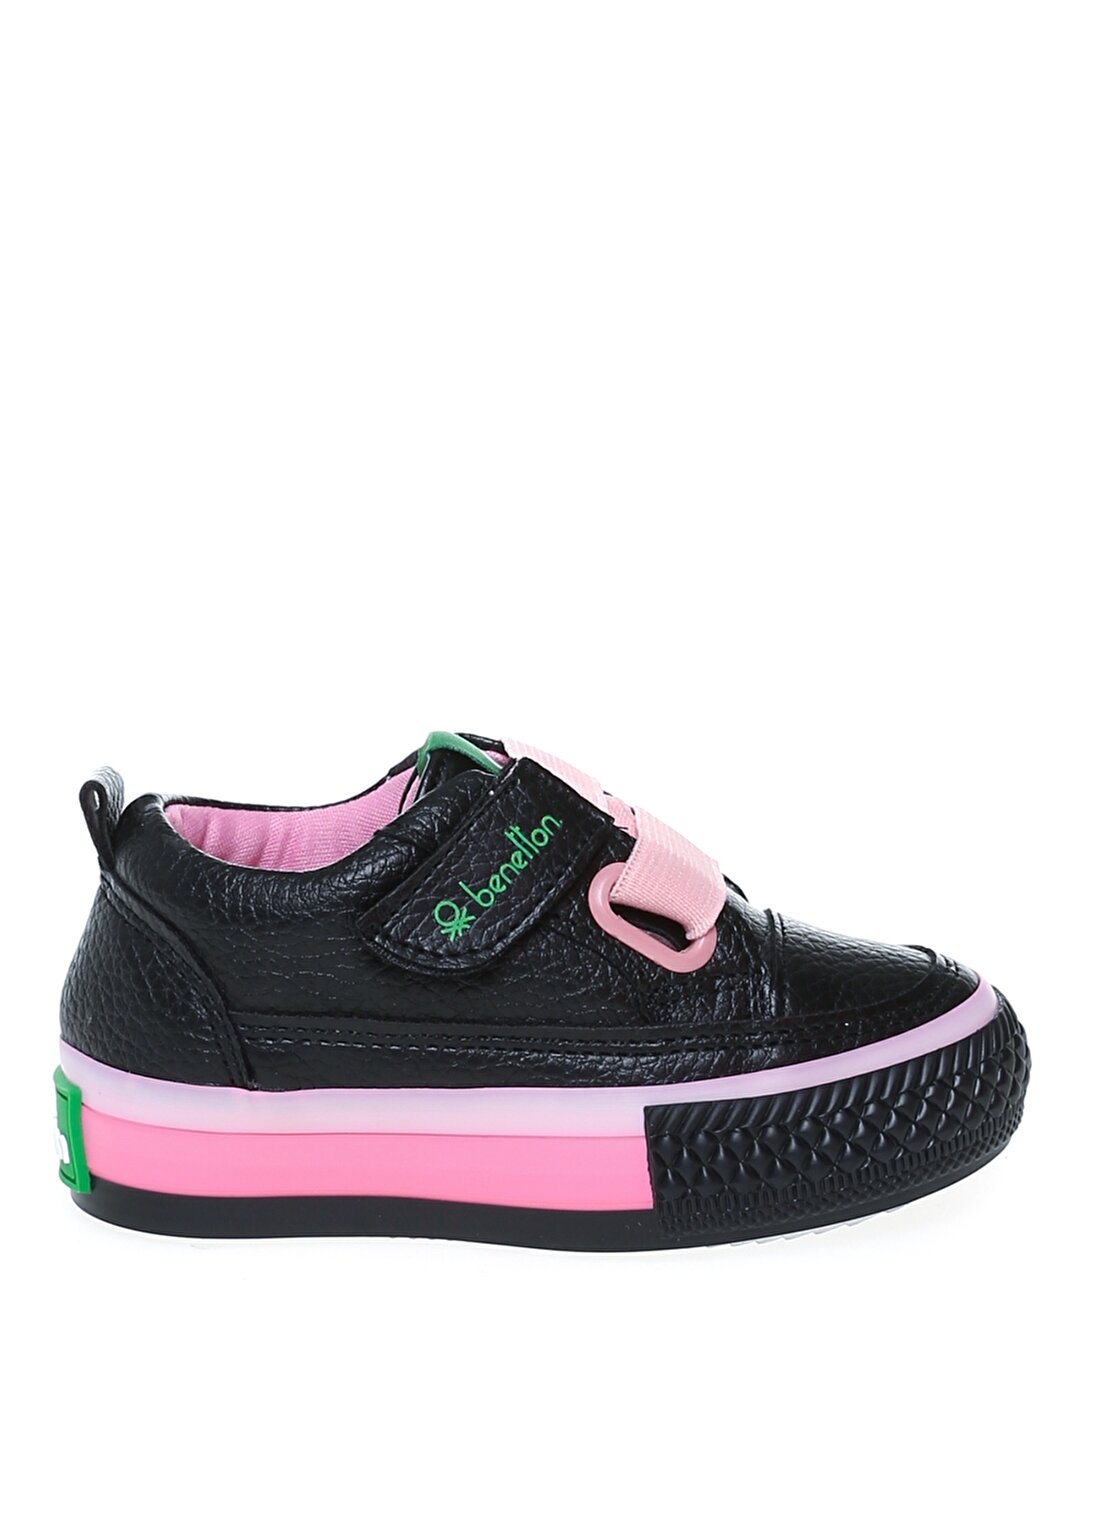 Benetton Siyah - Pembe Erkek Bebek Yürüyüş Ayakkabısı BN-30445